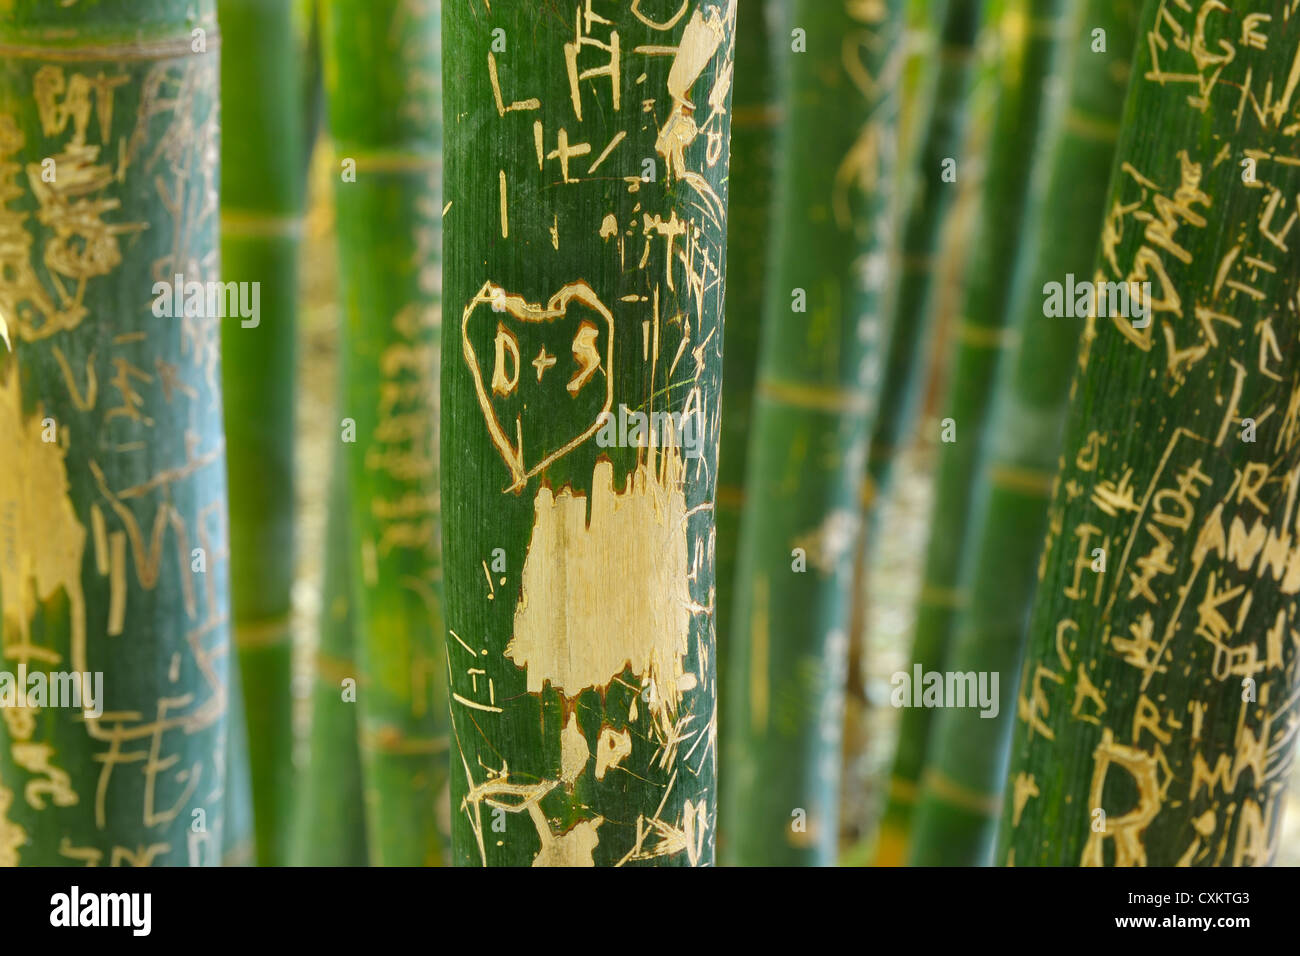 Graffiti in Bamboo, Majorelle Garden, Marrakech, Morocco Stock Photo